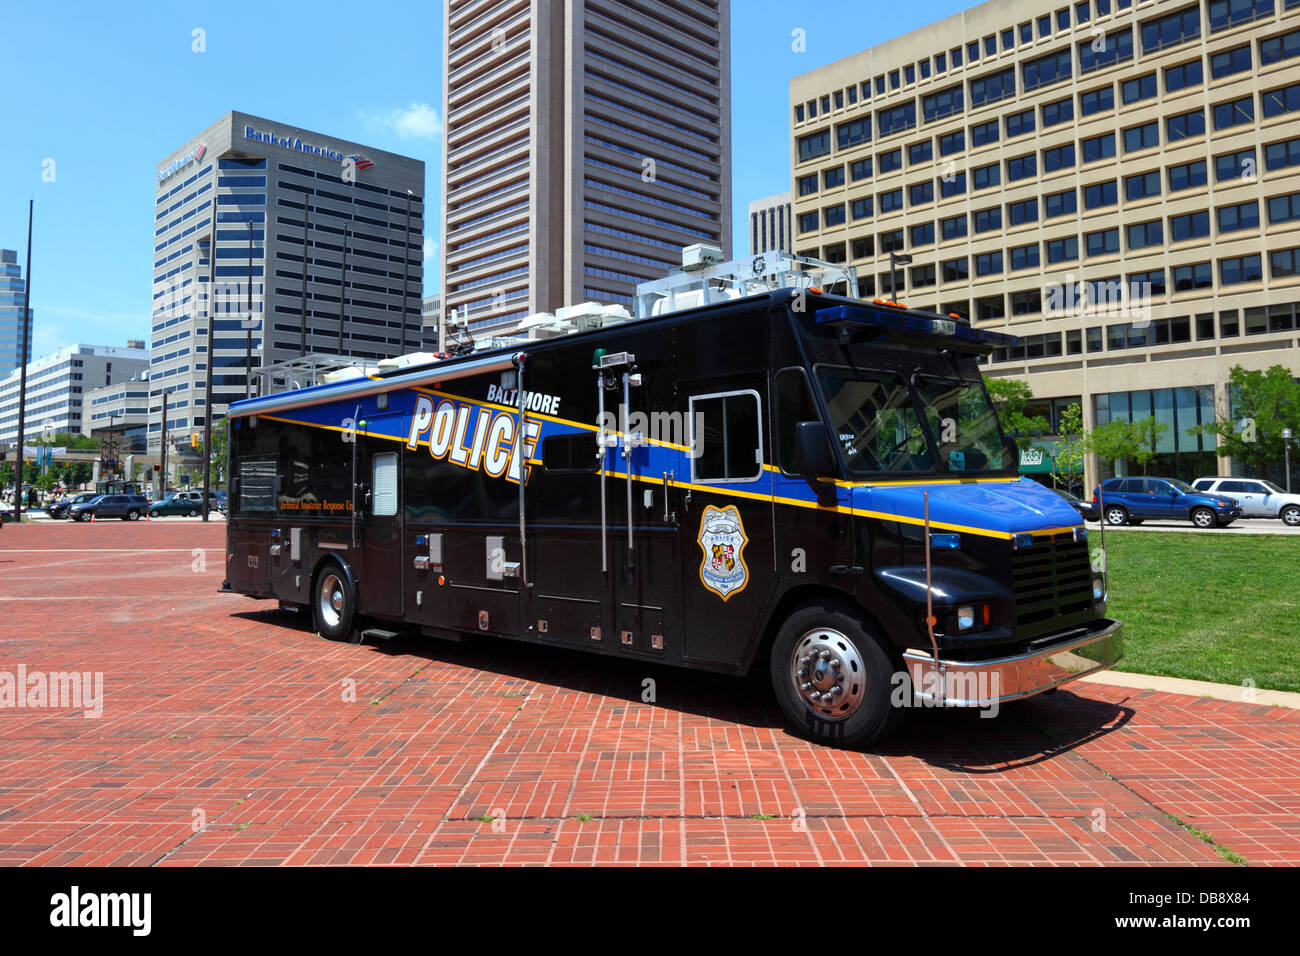 Baltimore police assistance technique camion de l'unité de réponse, Transamerica Tower et Bank of America bâtiment en arrière-plan, Inner Harbour, Baltimore, États-Unis Banque D'Images